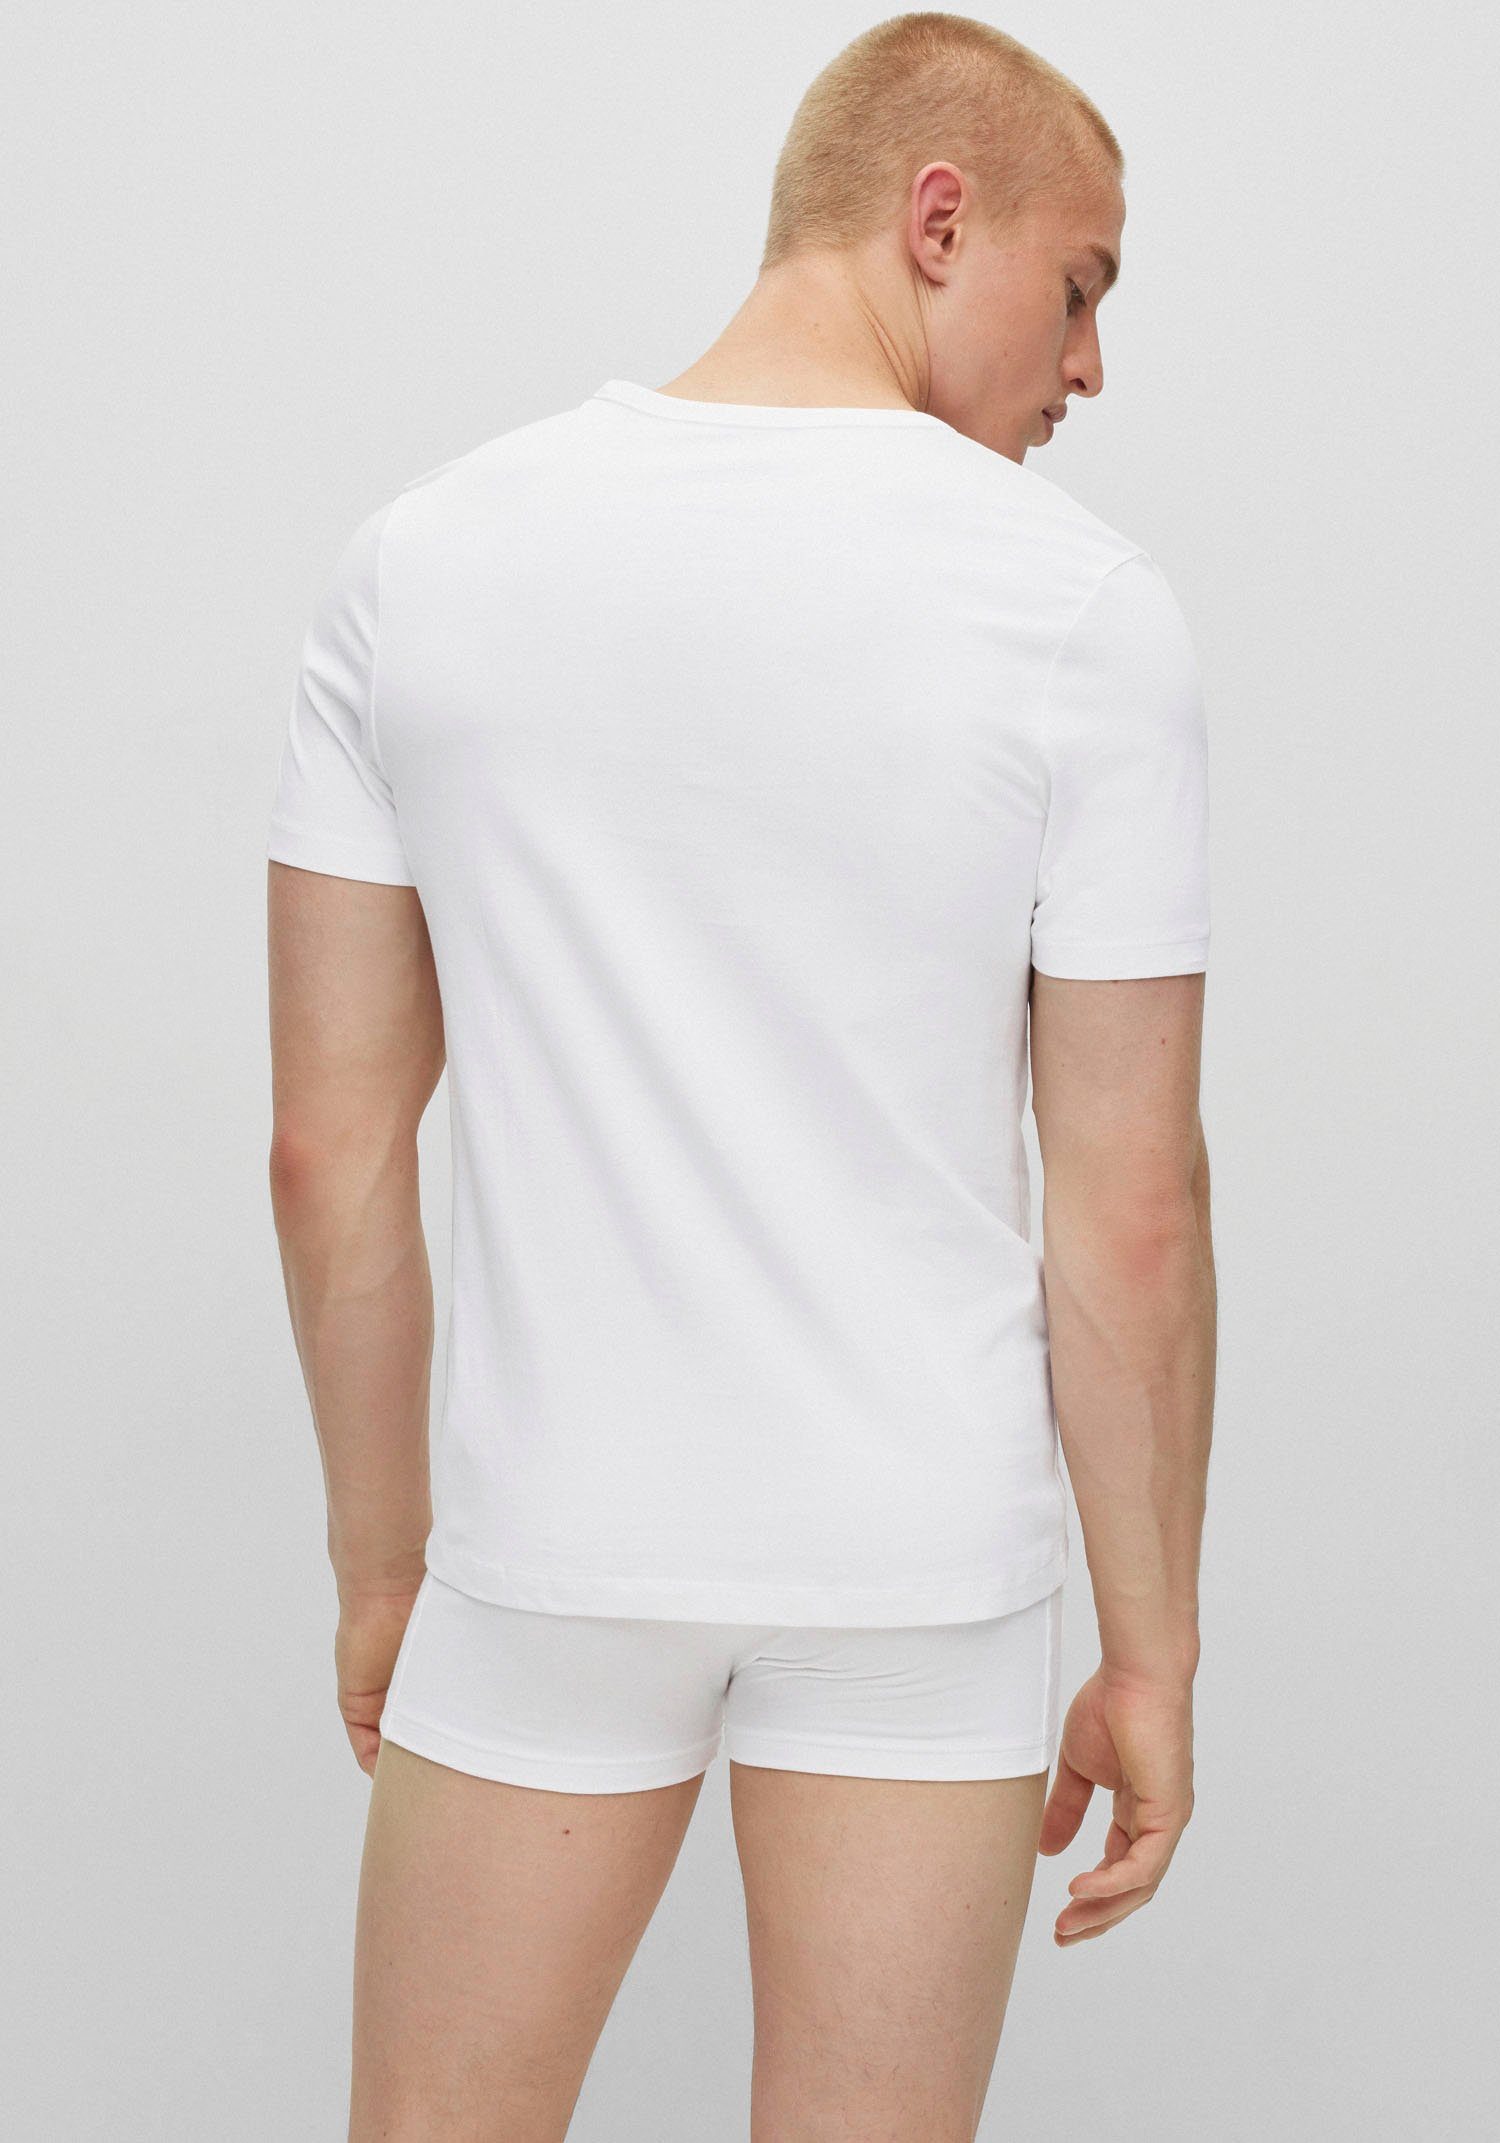 BOSS V-Shirt T-Shirt 3P VN white CO (Packung)